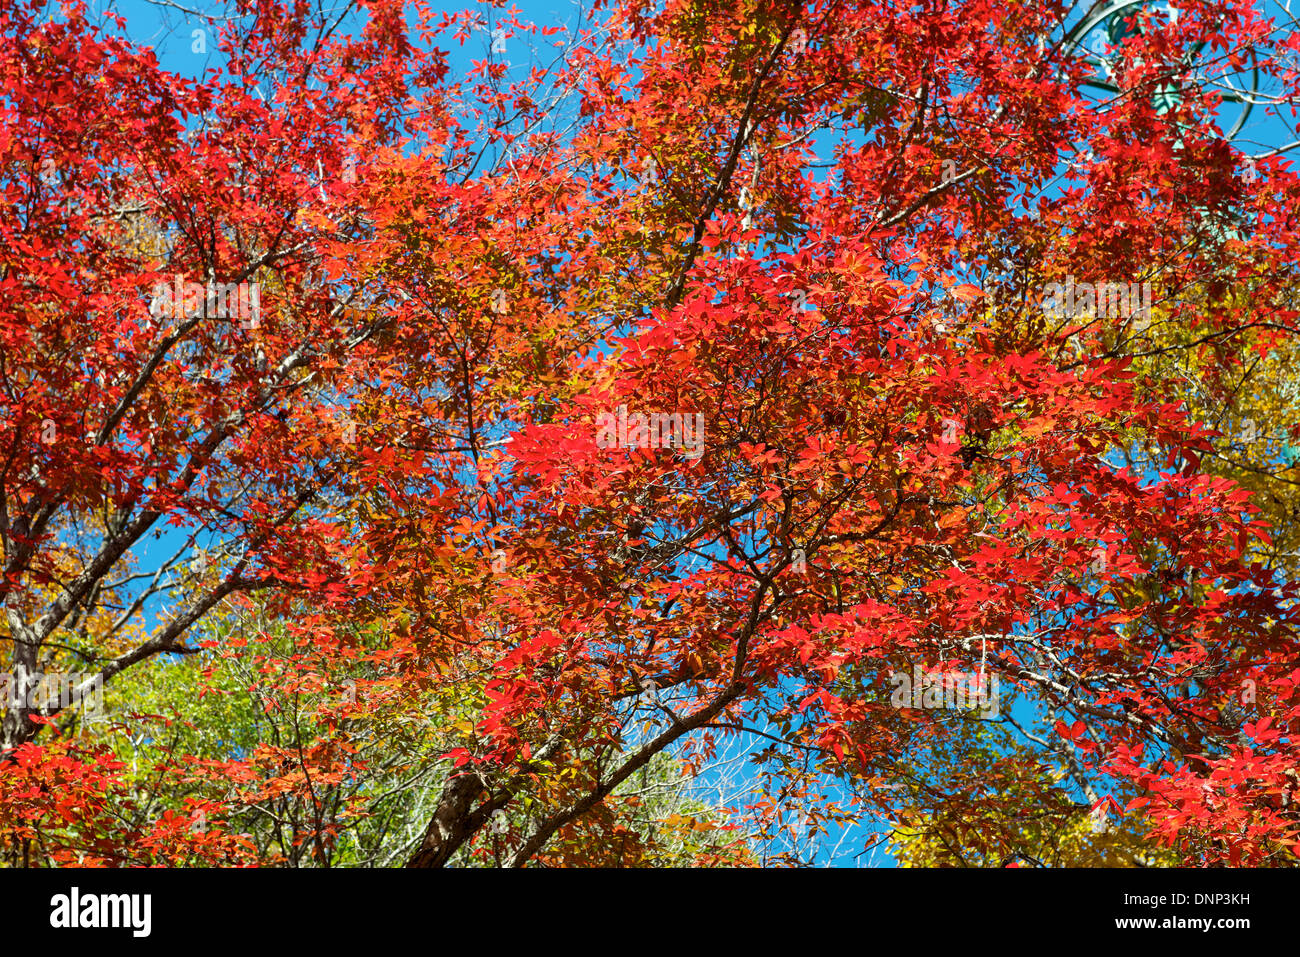 Feuille d'érable de couleur de fond d'arbres en automne, Benxi Chine Liaoning Banque D'Images